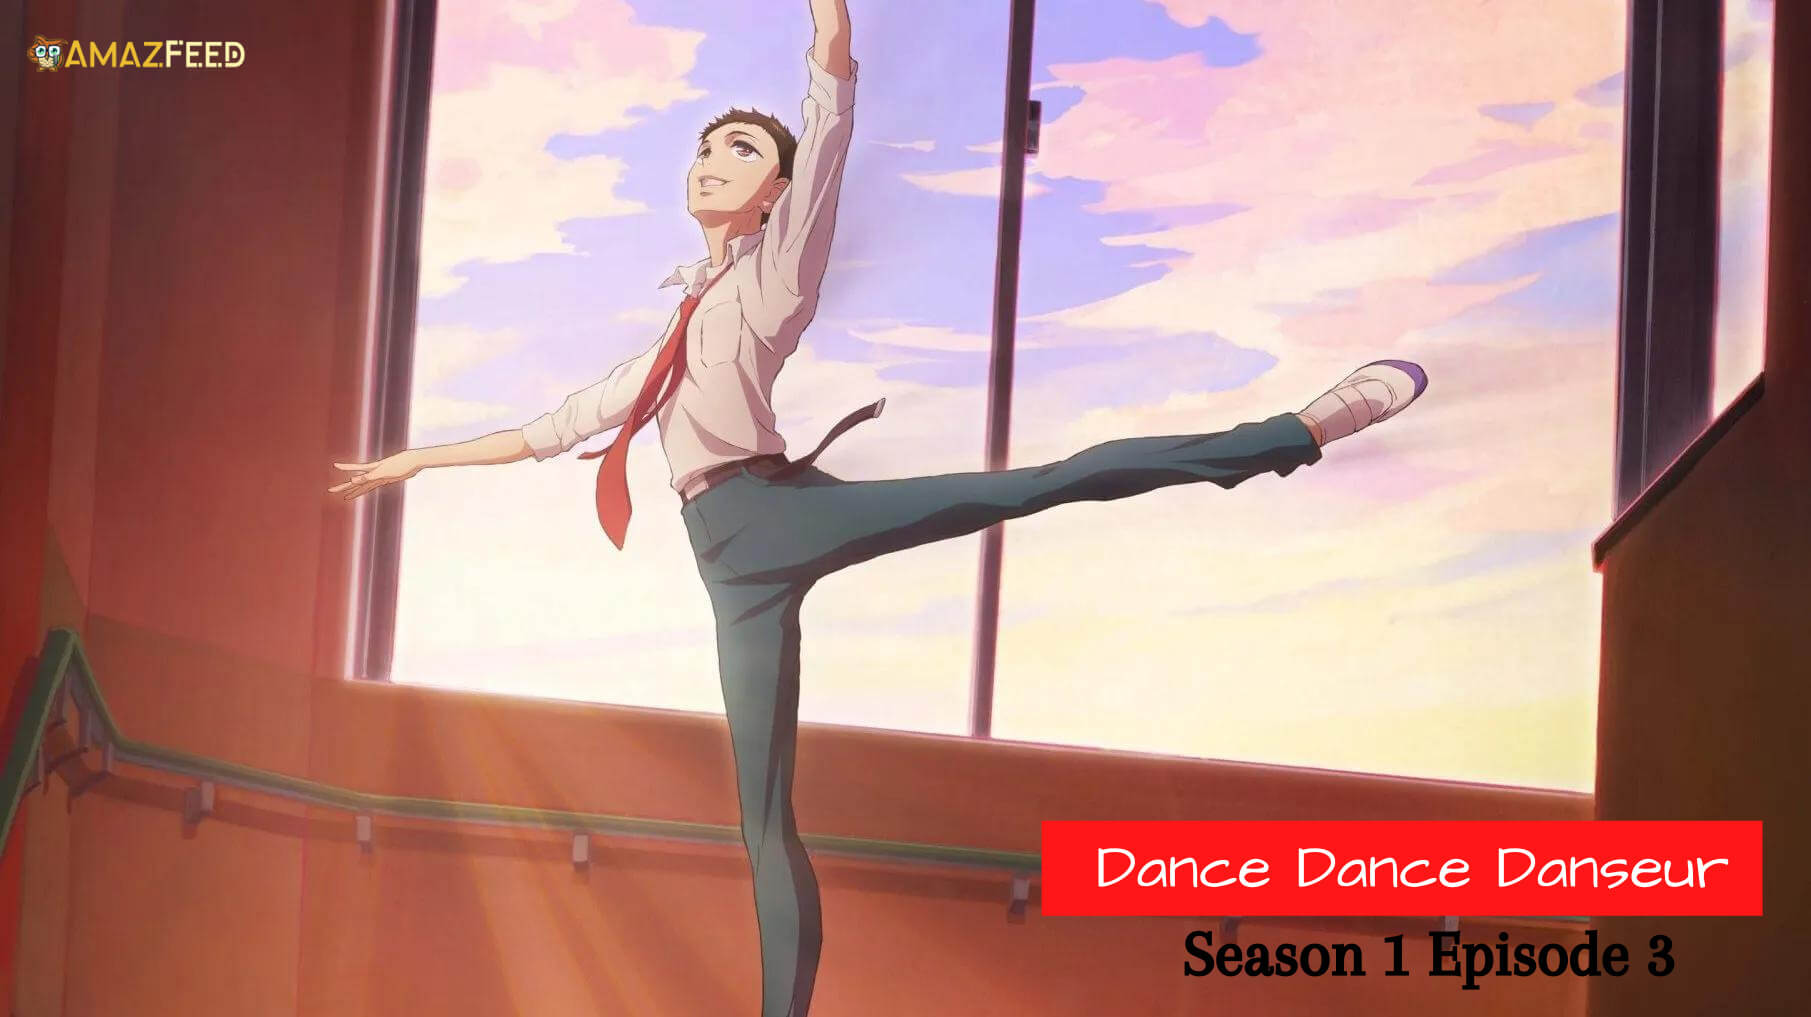 Dance Dance Danseur Season 1 Episode 3 Release date